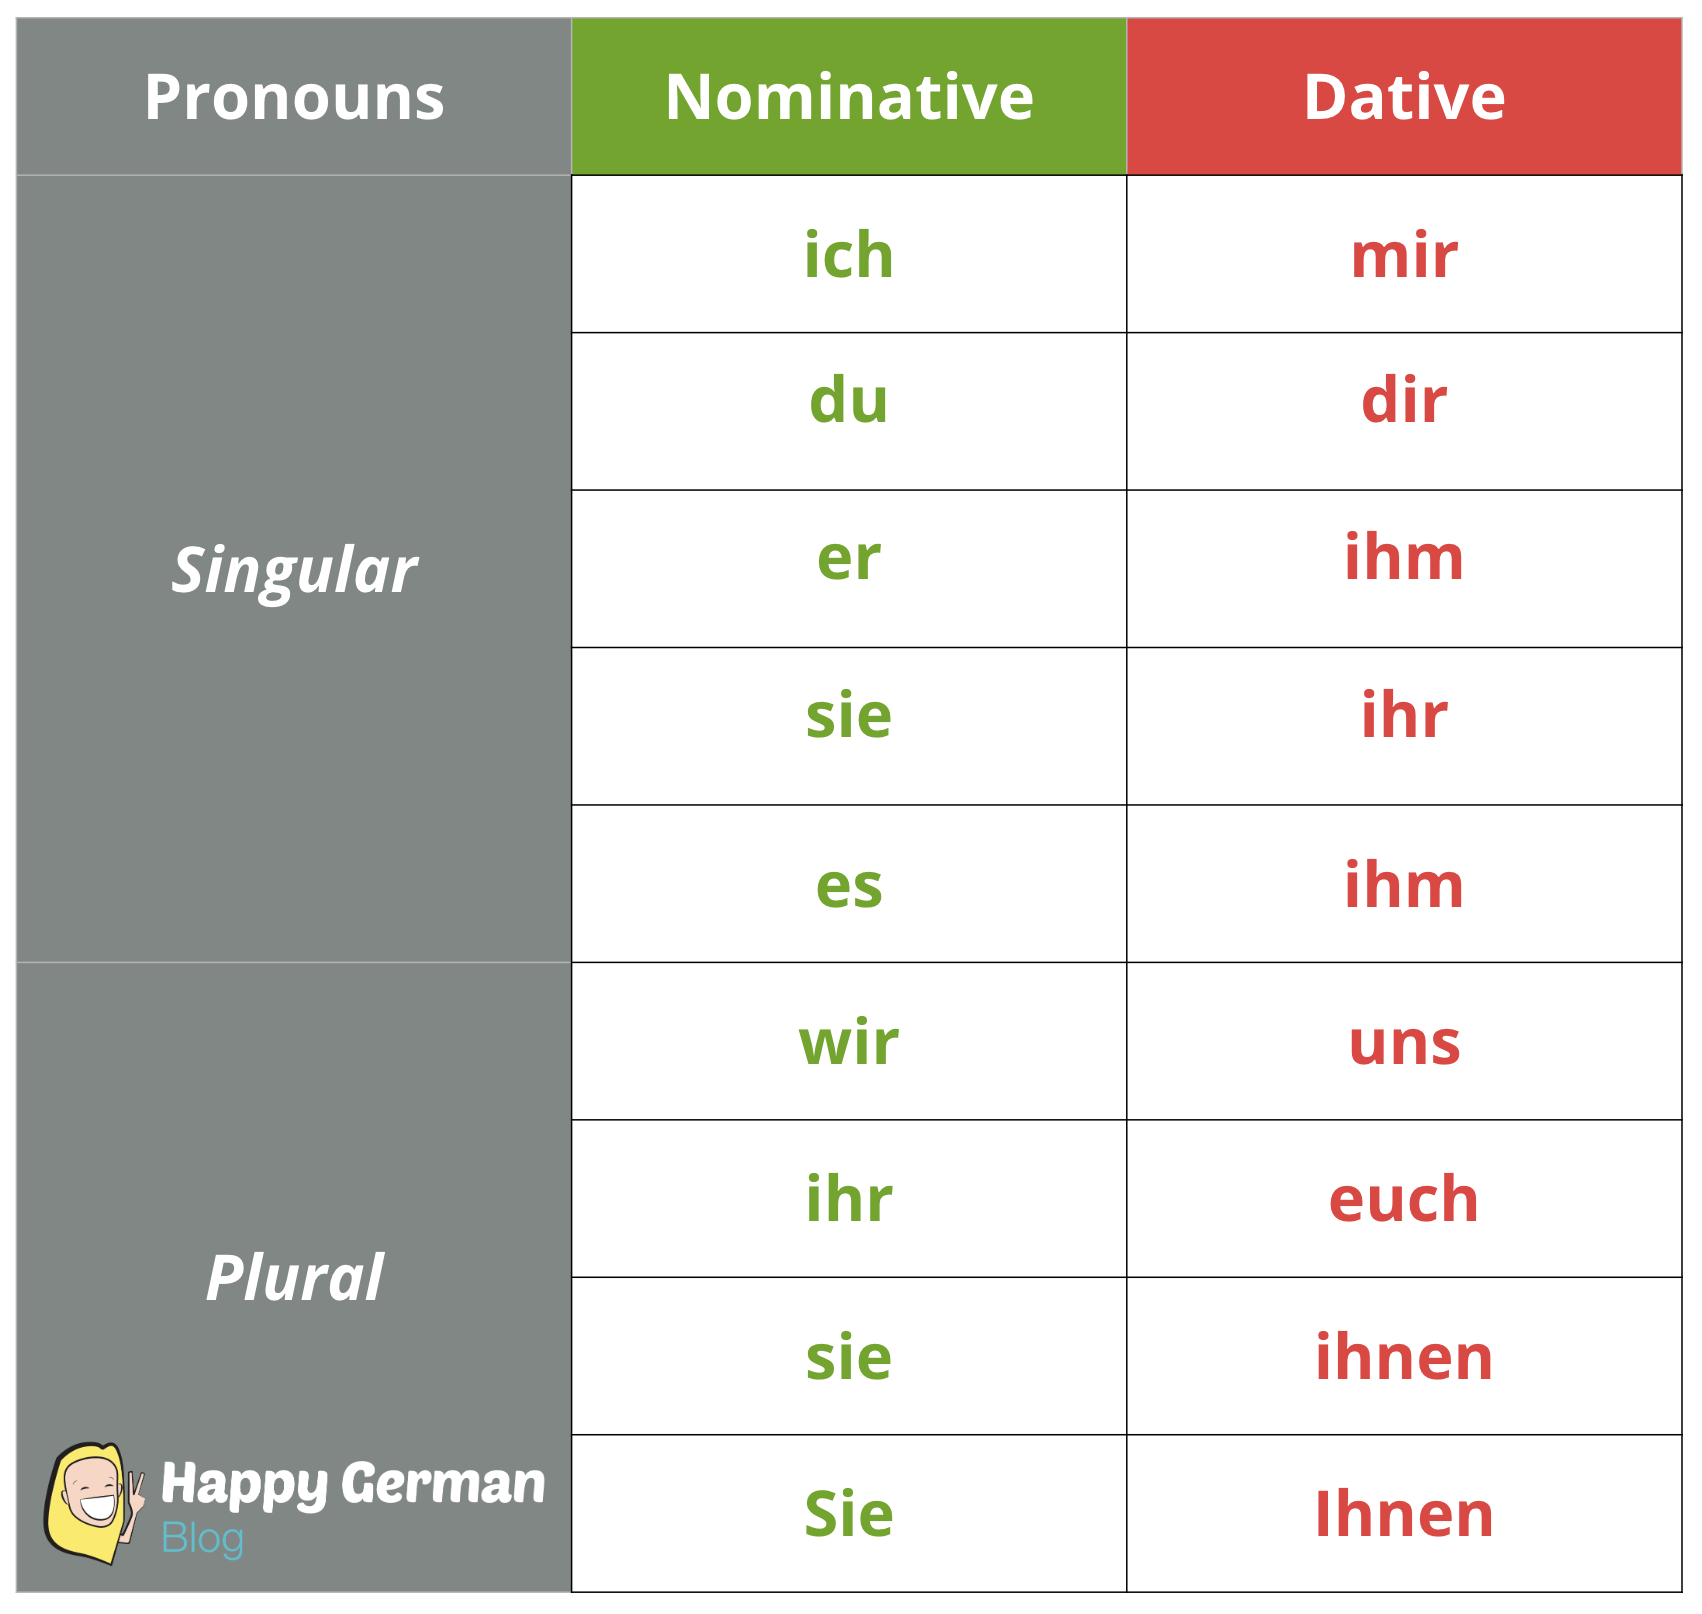 dative case learn german